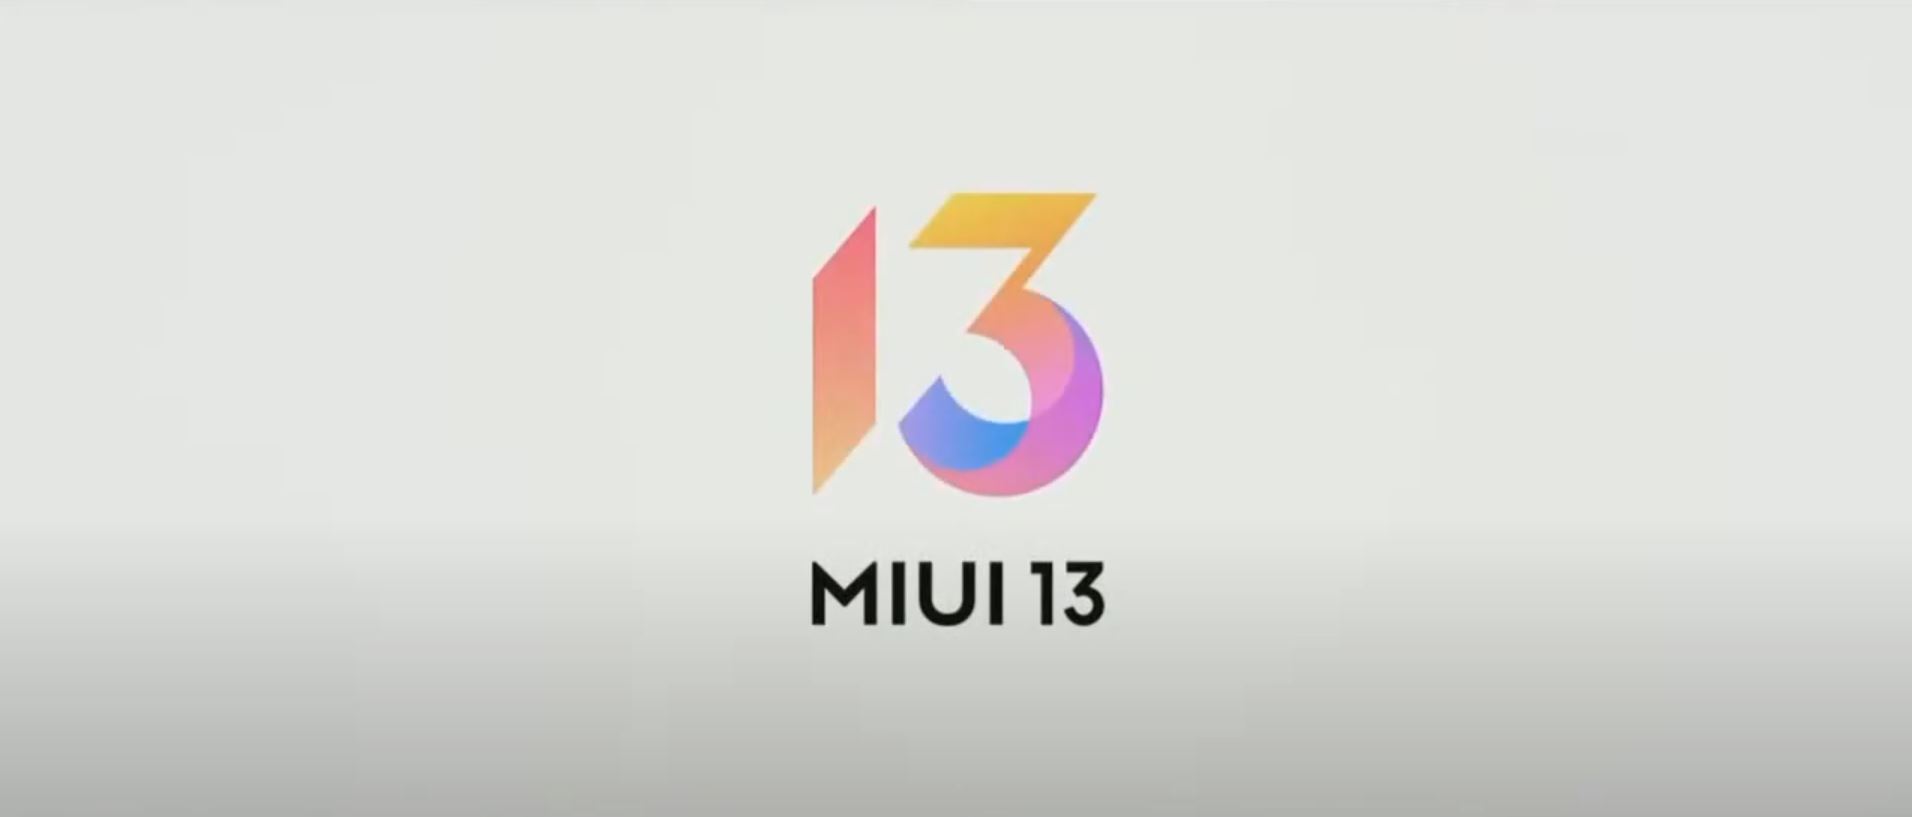 Xiaomi เปิดตัว MIUI 13 เสริมความปลอดภัยและความเป็นส่วนตัวให้ดีกว่าเดิม!